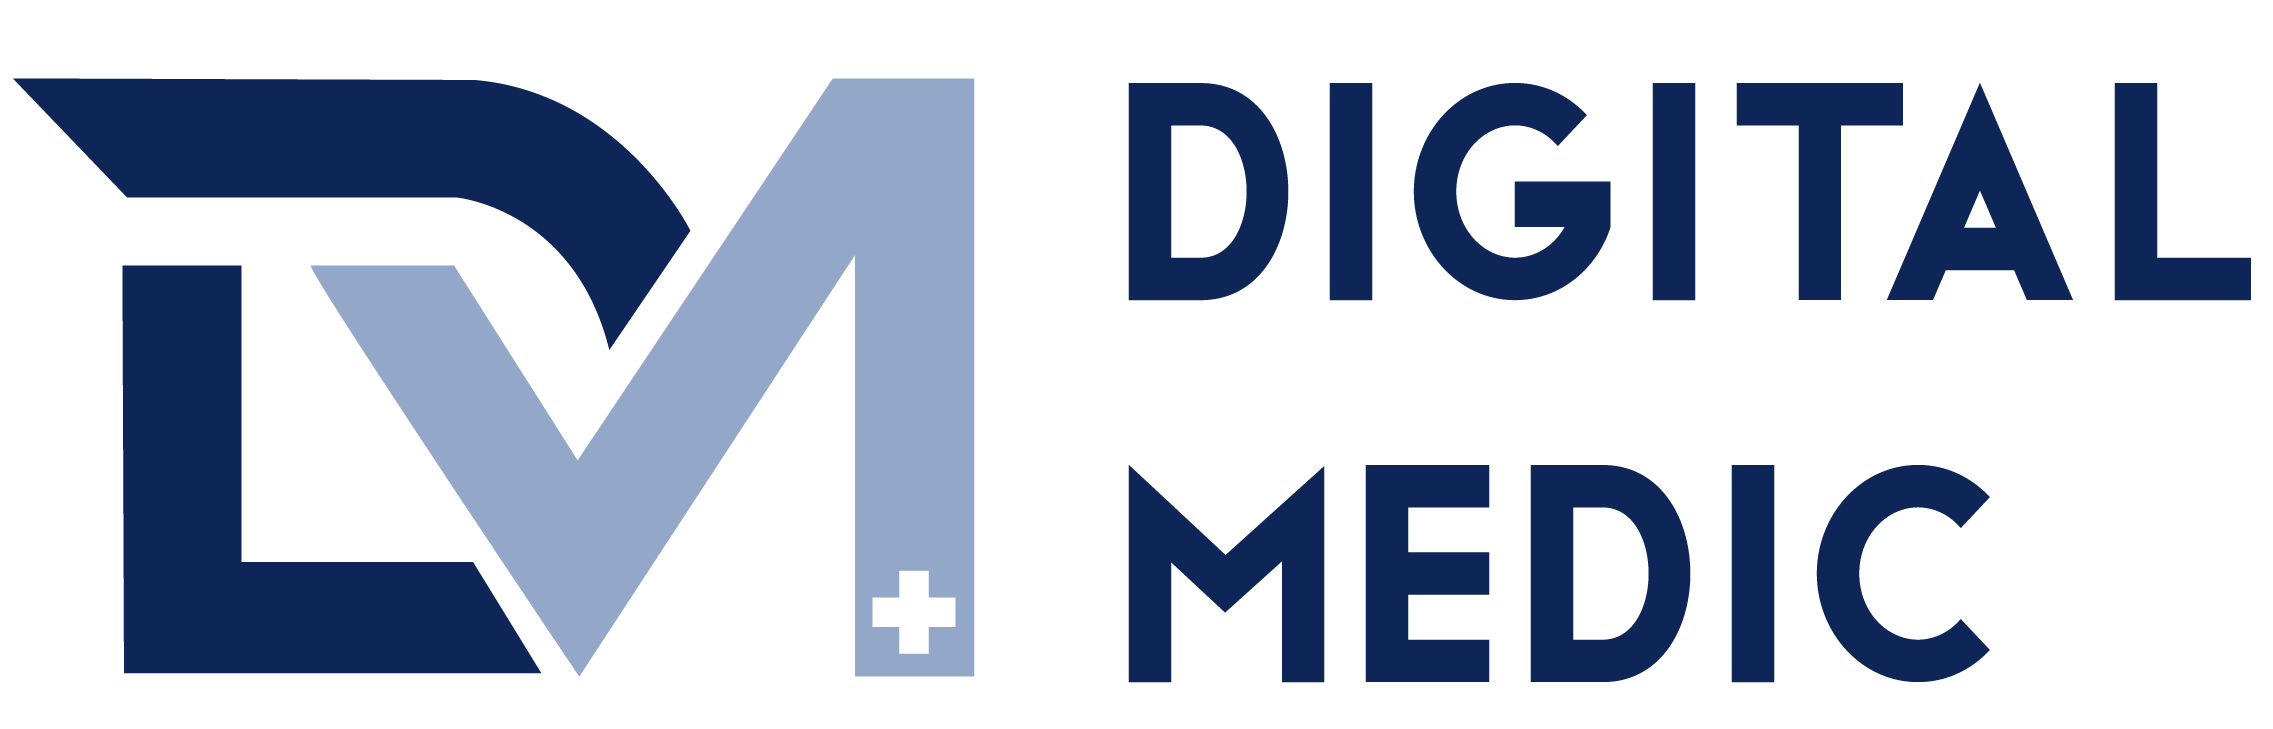 Digital medic logo (1) (2)